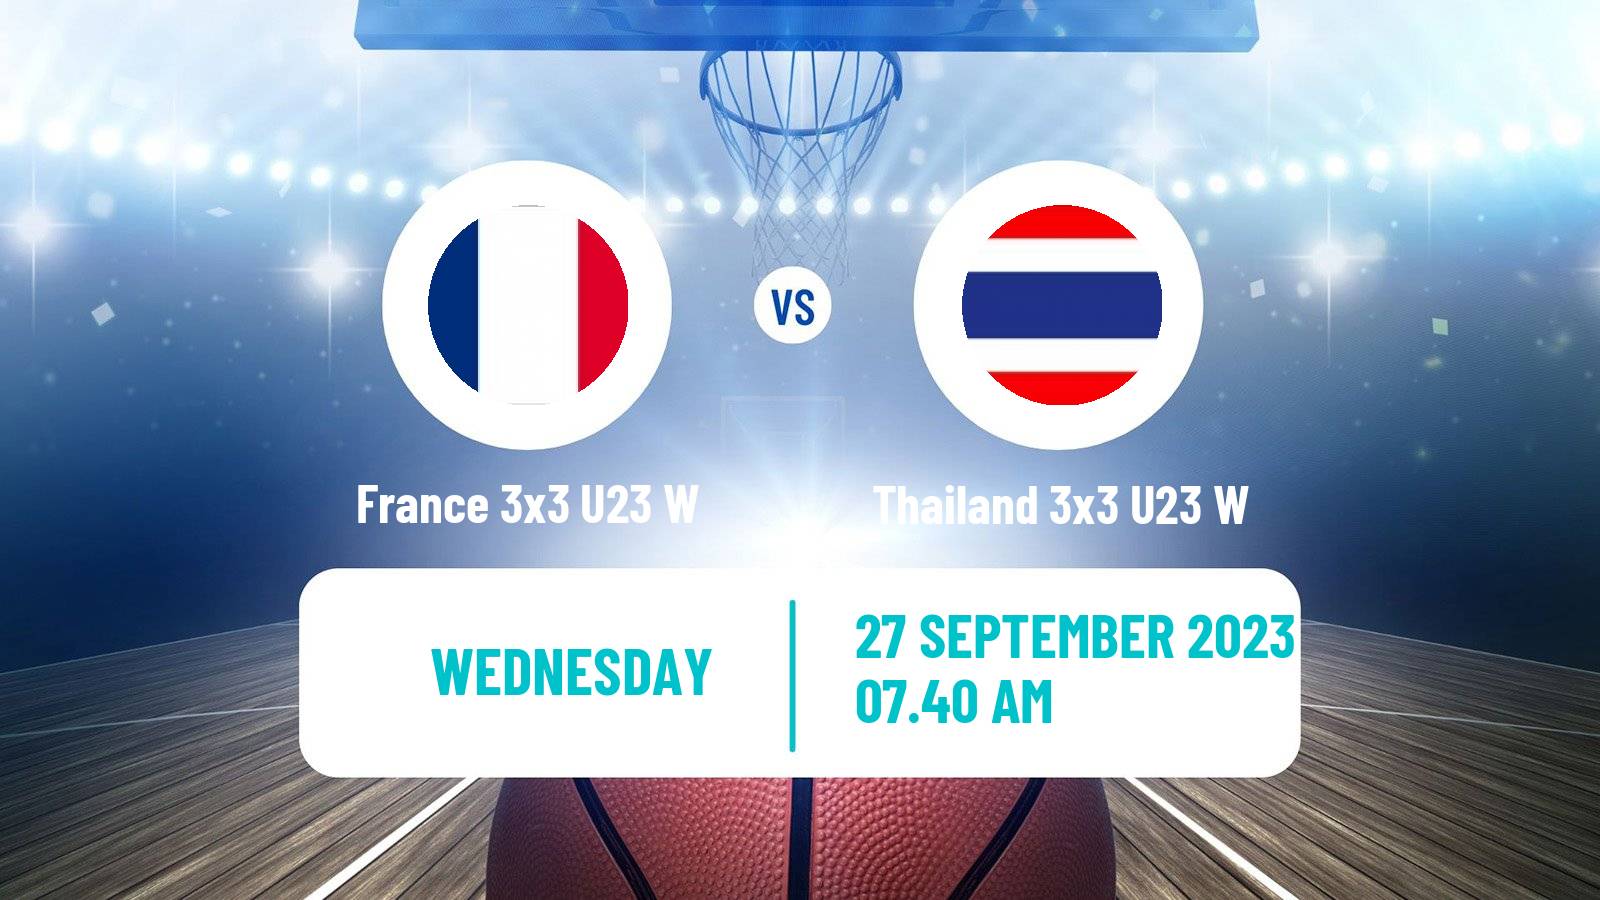 Basketball World Cup Basketball 3x3 U23 Women France 3x3 U23 W - Thailand 3x3 U23 W